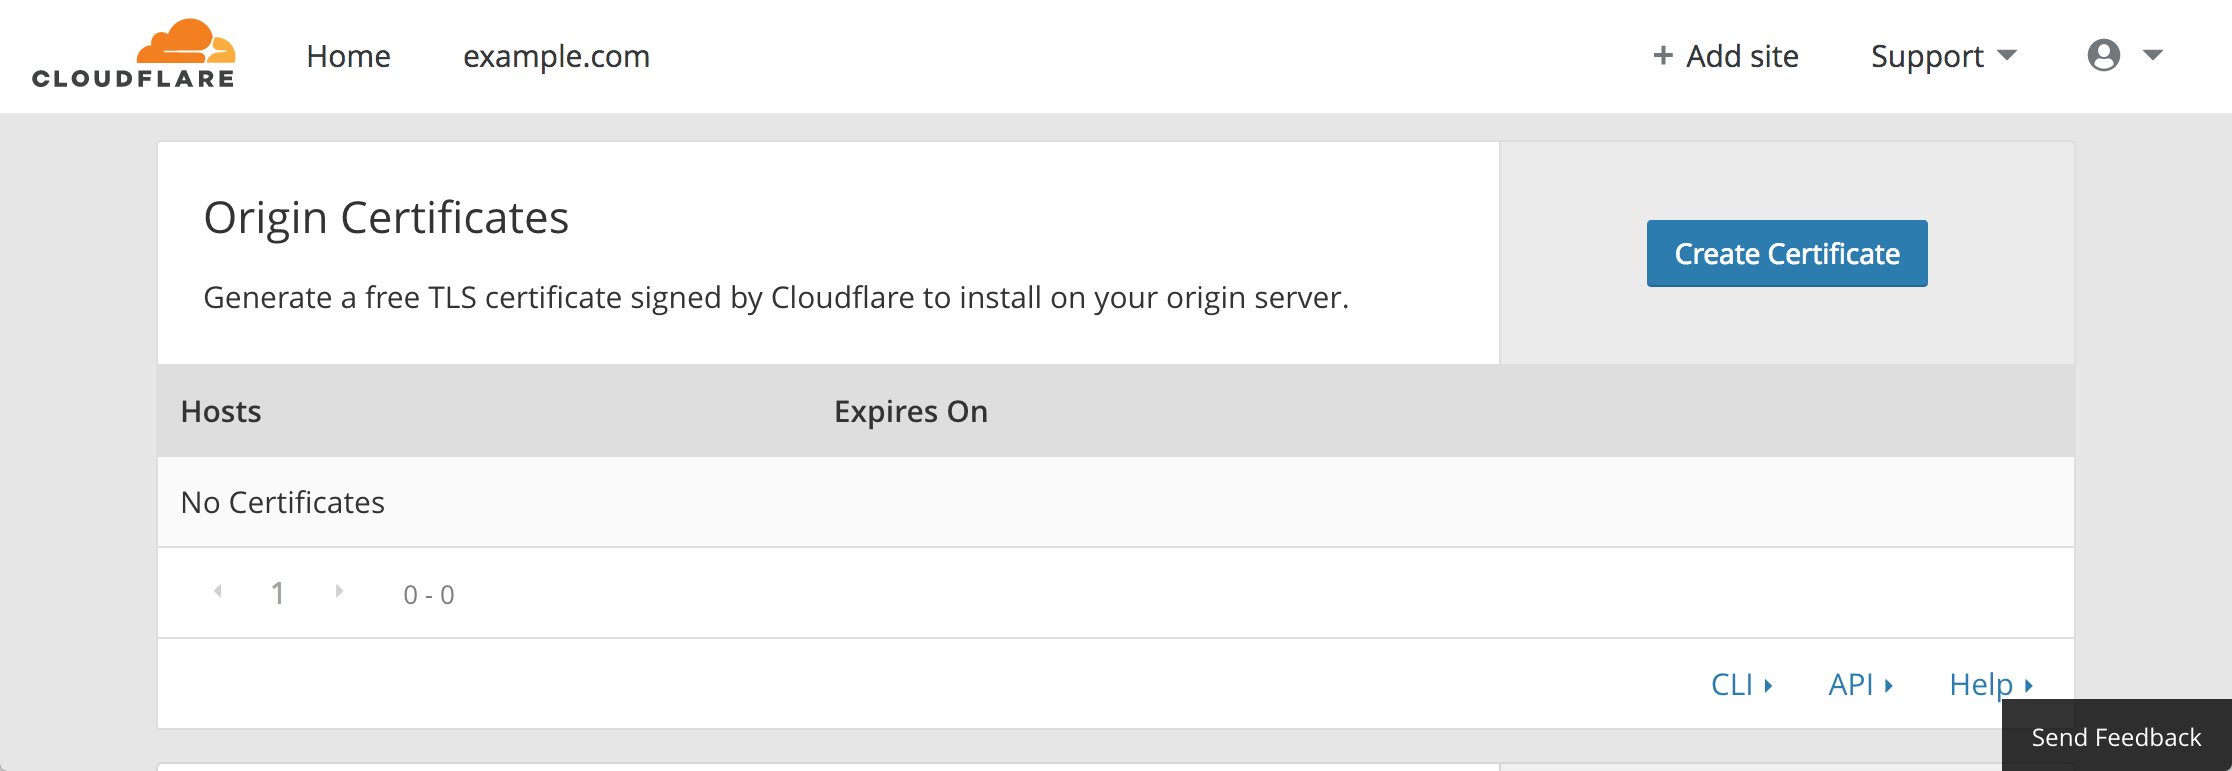 Cloudflare crypto - origin certificates panel